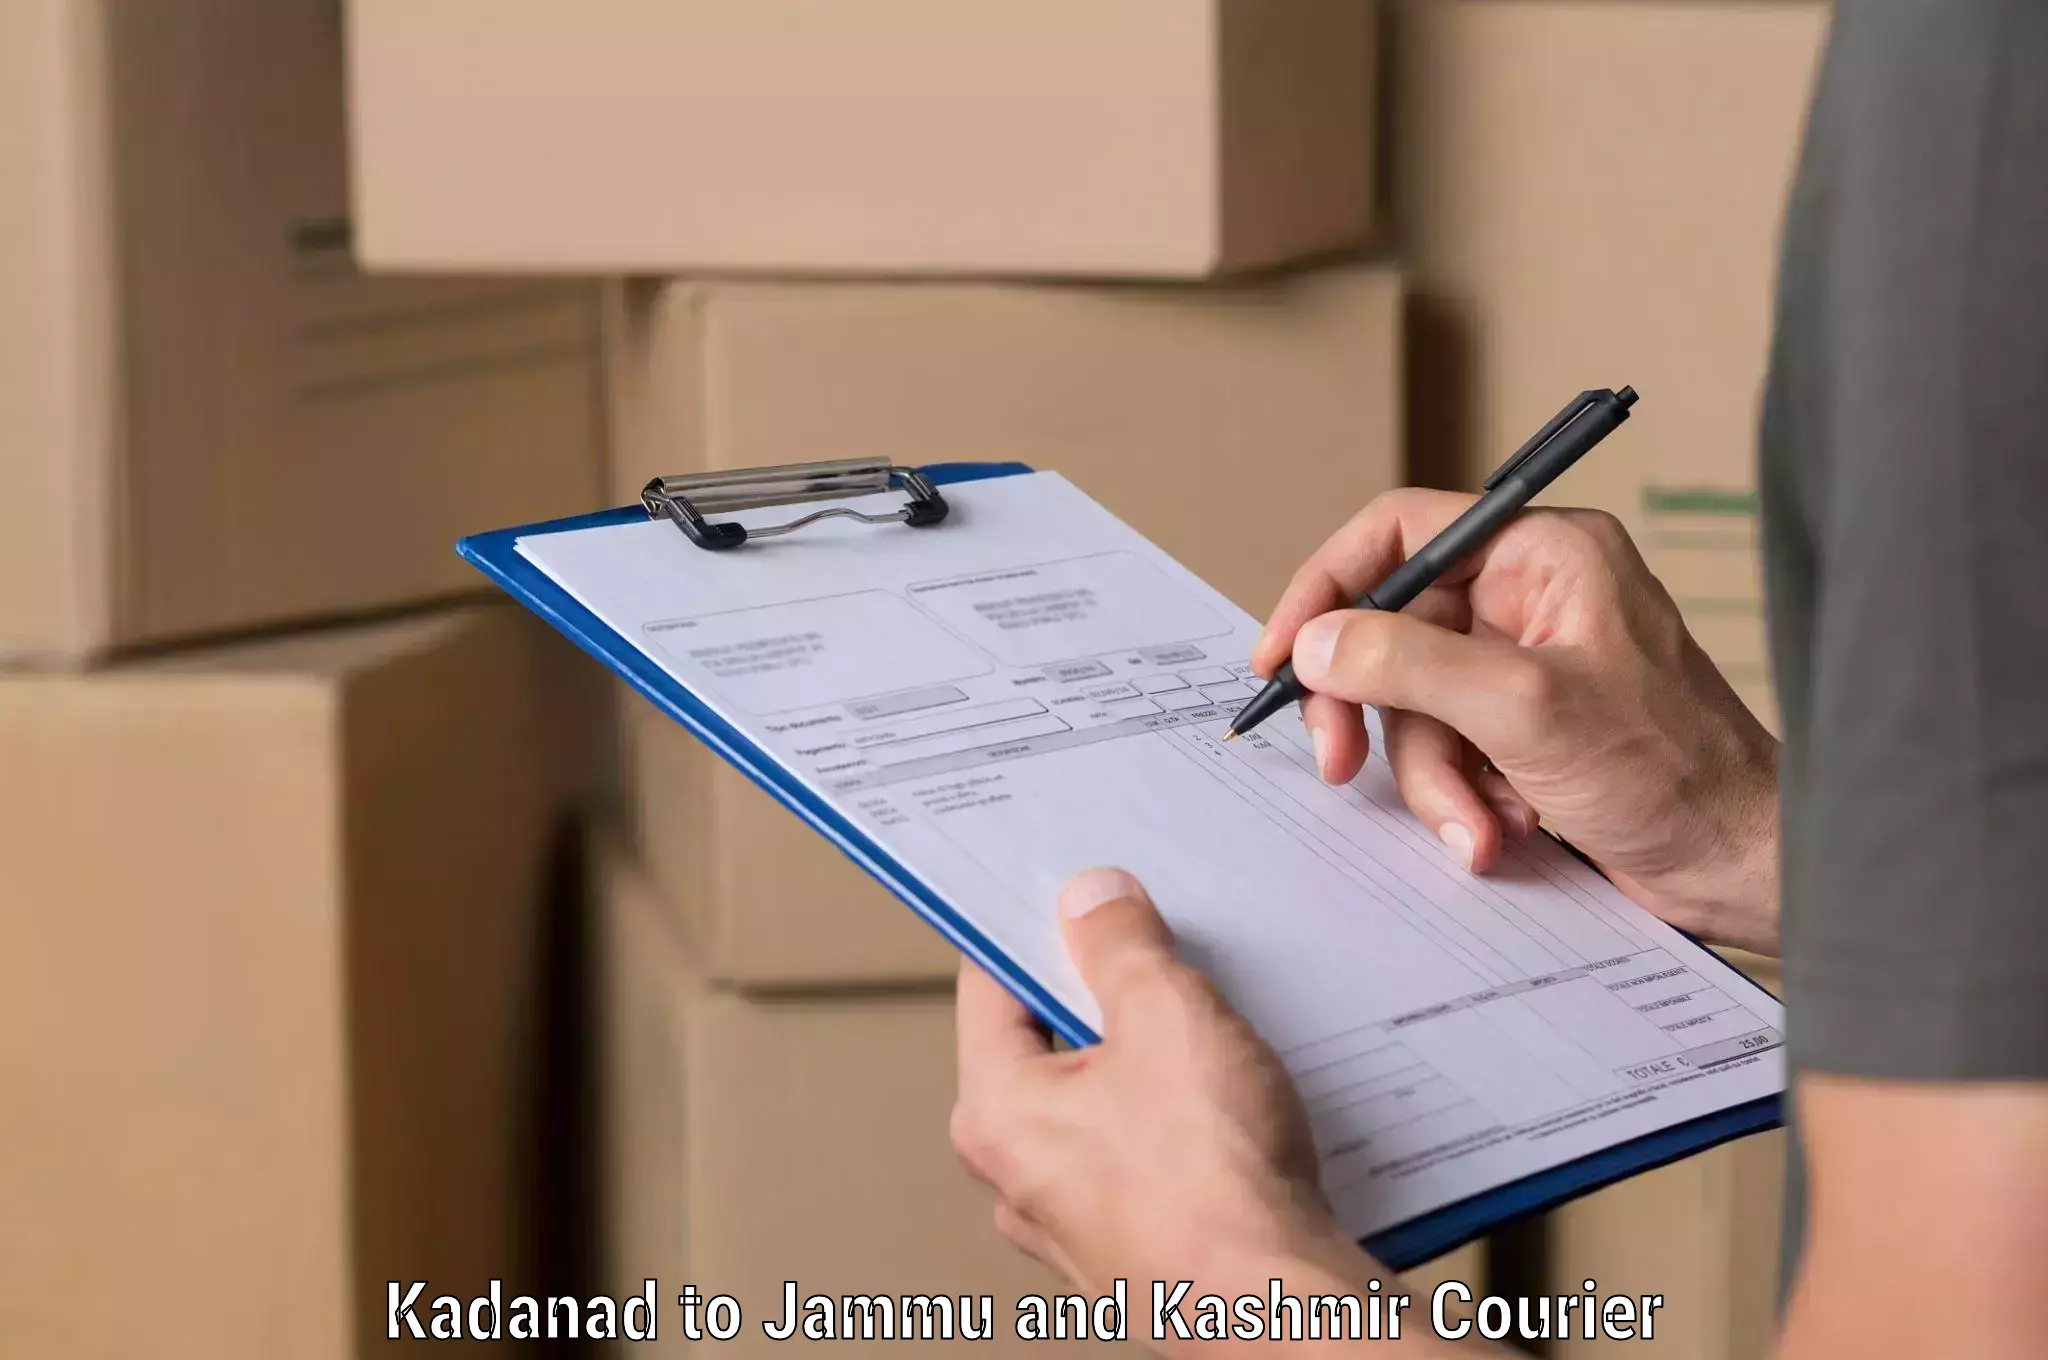 Expedited shipping methods Kadanad to Jakh